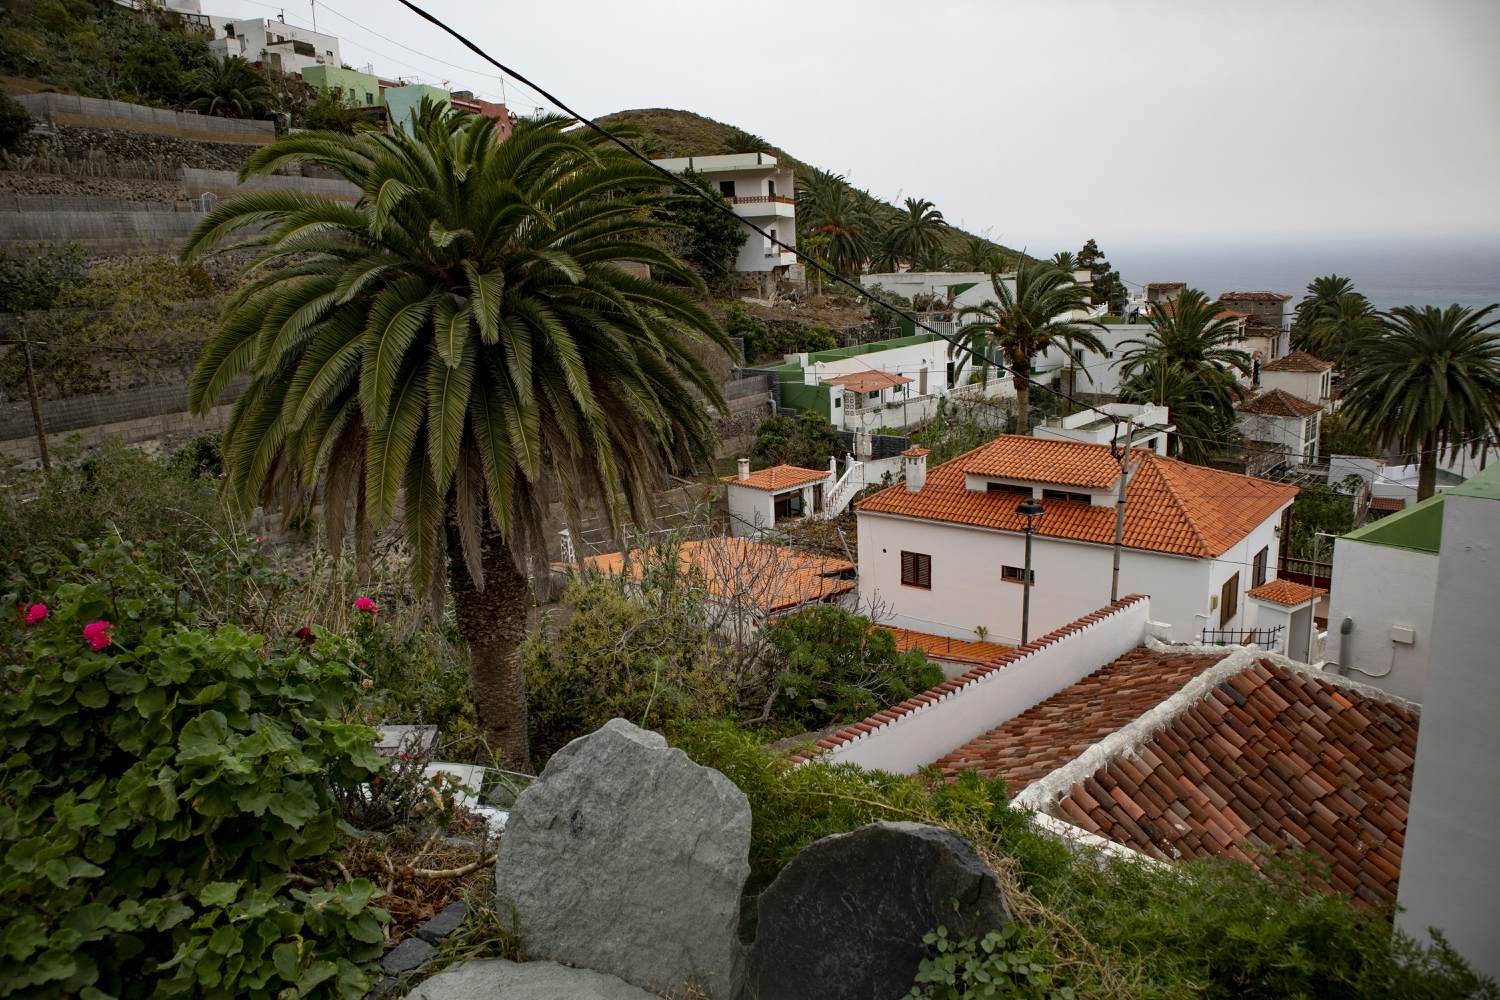 Vista del distrito de Portugal - Taganana